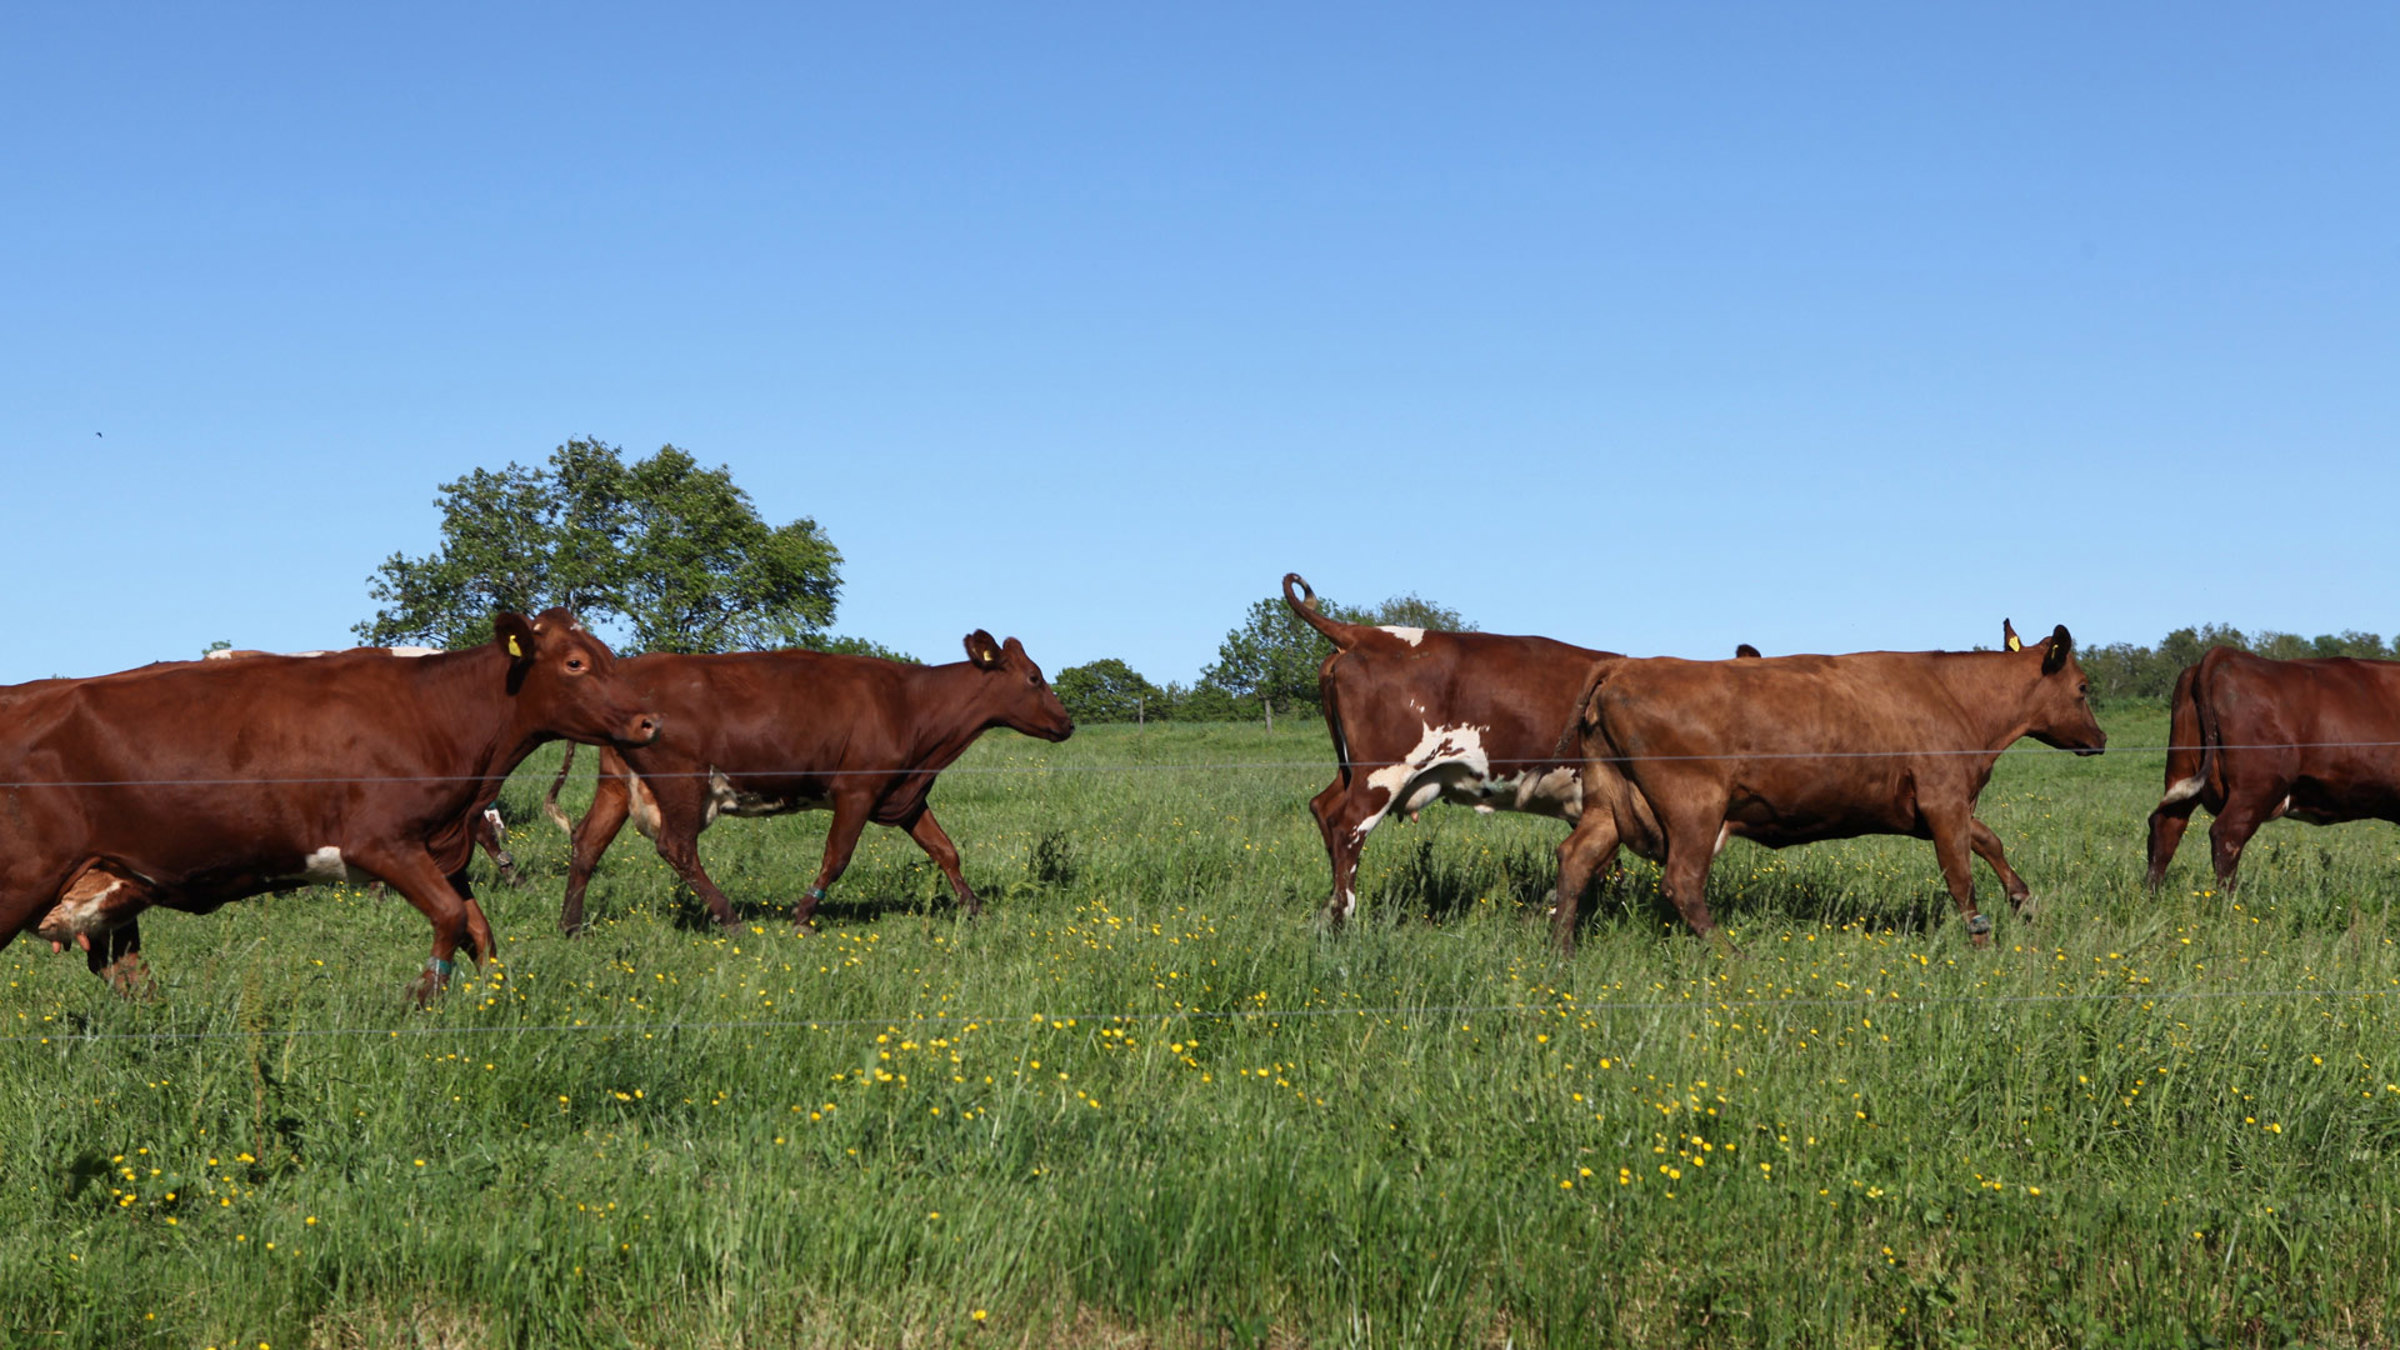 Cows running through a field